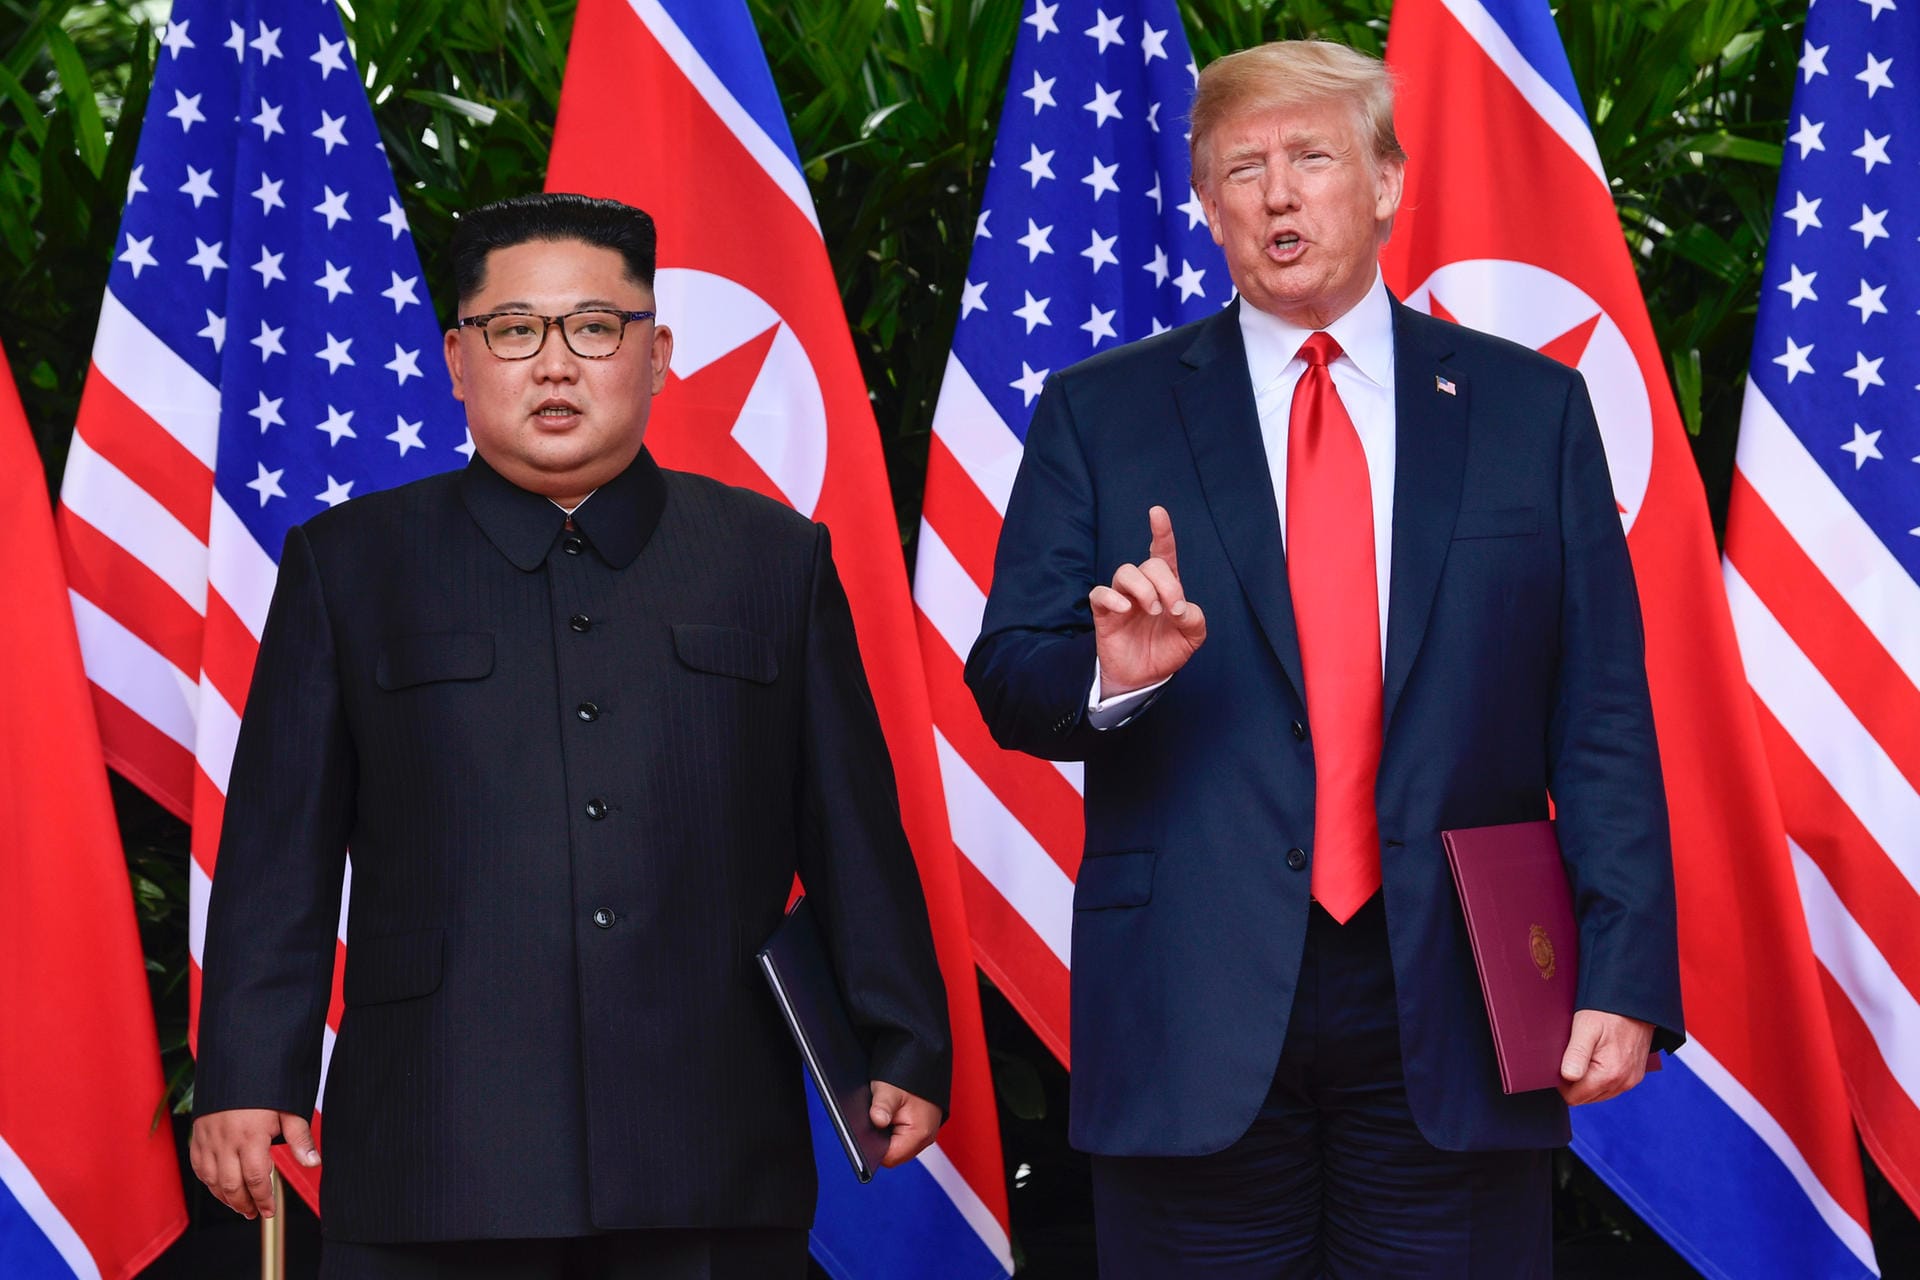 Anschließend gab es lobende Worte vom Präsidenten: "Er ist ein sehr talentierter Mann und er liebt sein Land sehr", sagt Donald Trump über Kim Jong Un. Es sei ihm eine Ehre gewesen, mit Kim den Tag zu verbringen, erklärt Trump weiter.